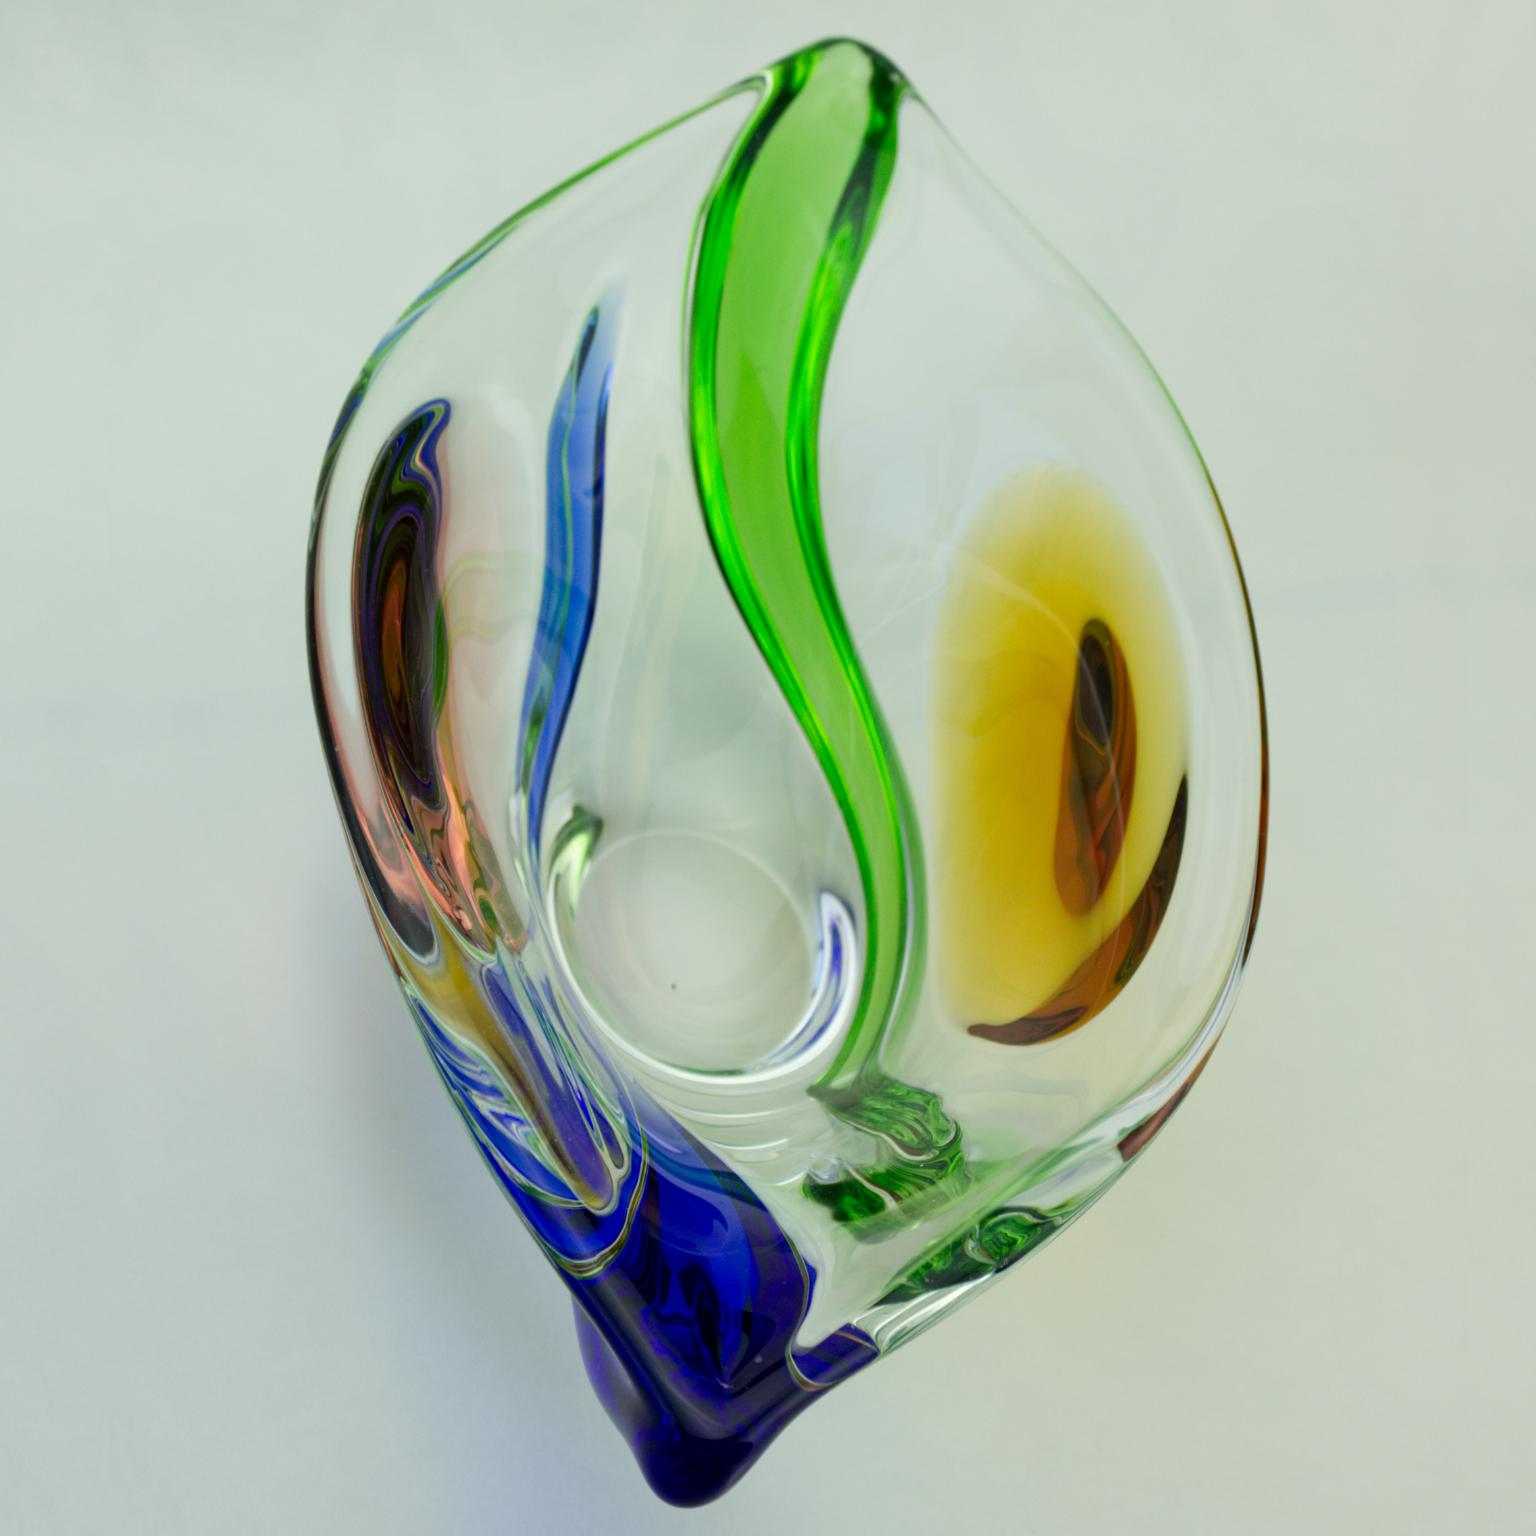 Mid-Century Modern Czech Art Glass Bowl by Frantisek Zemek for Mstisov Glassworks, 1960